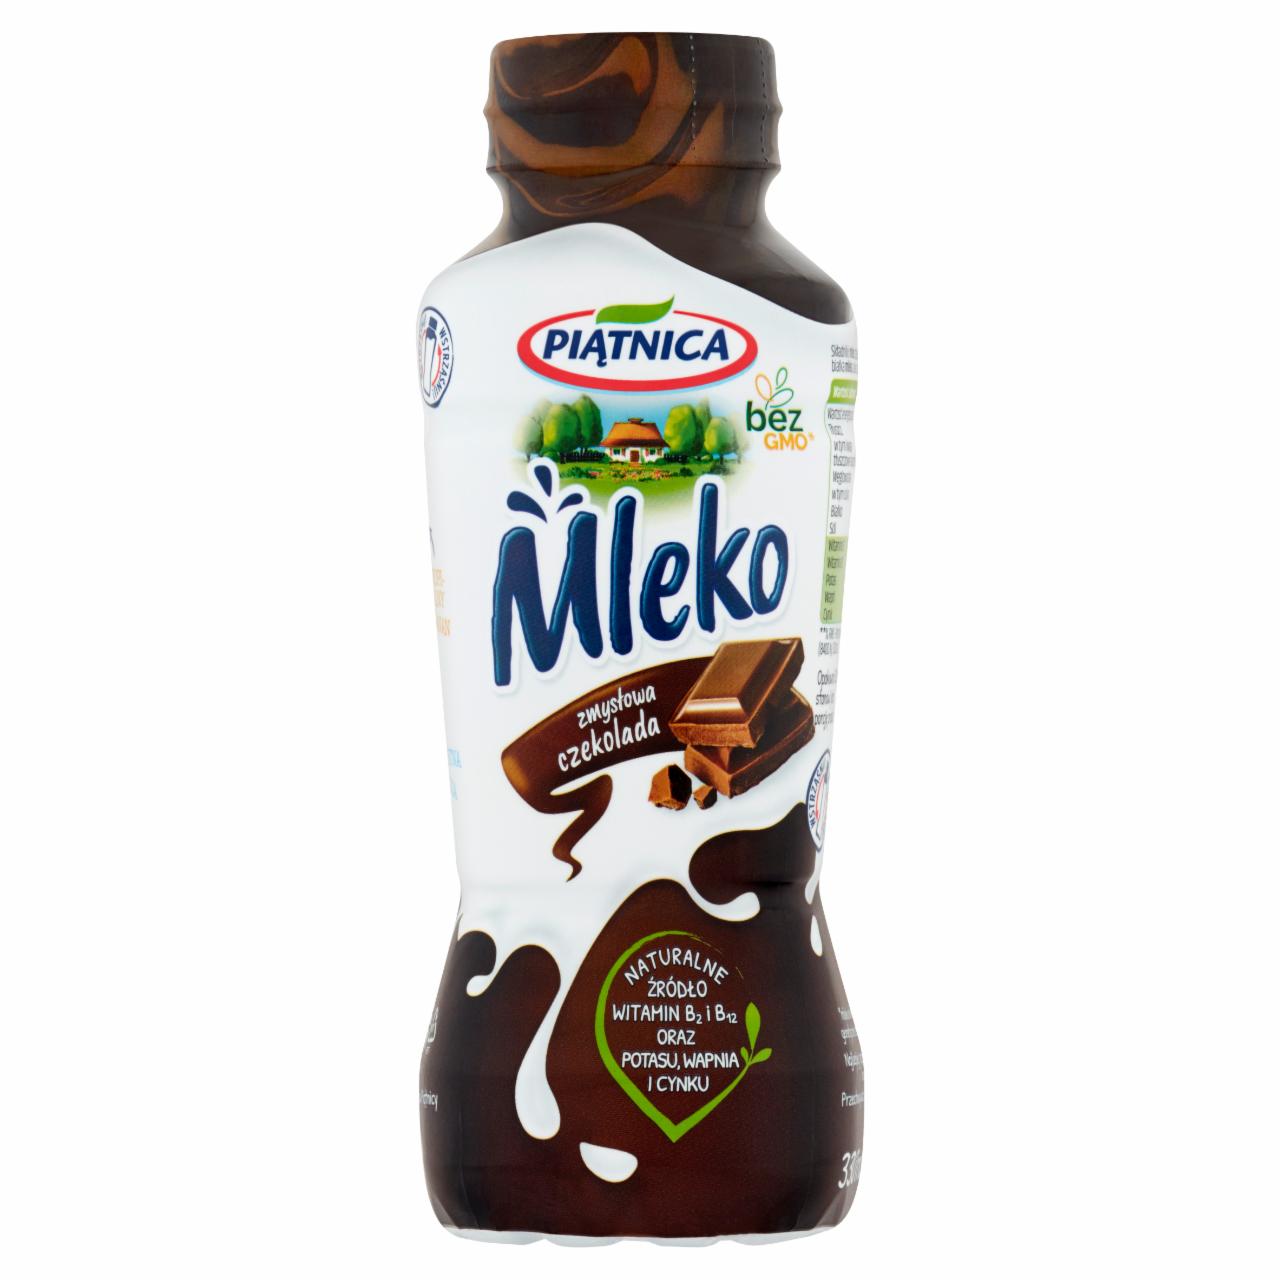 Zdjęcia - Piątnica Mleko zmysłowa czekolada 330 ml